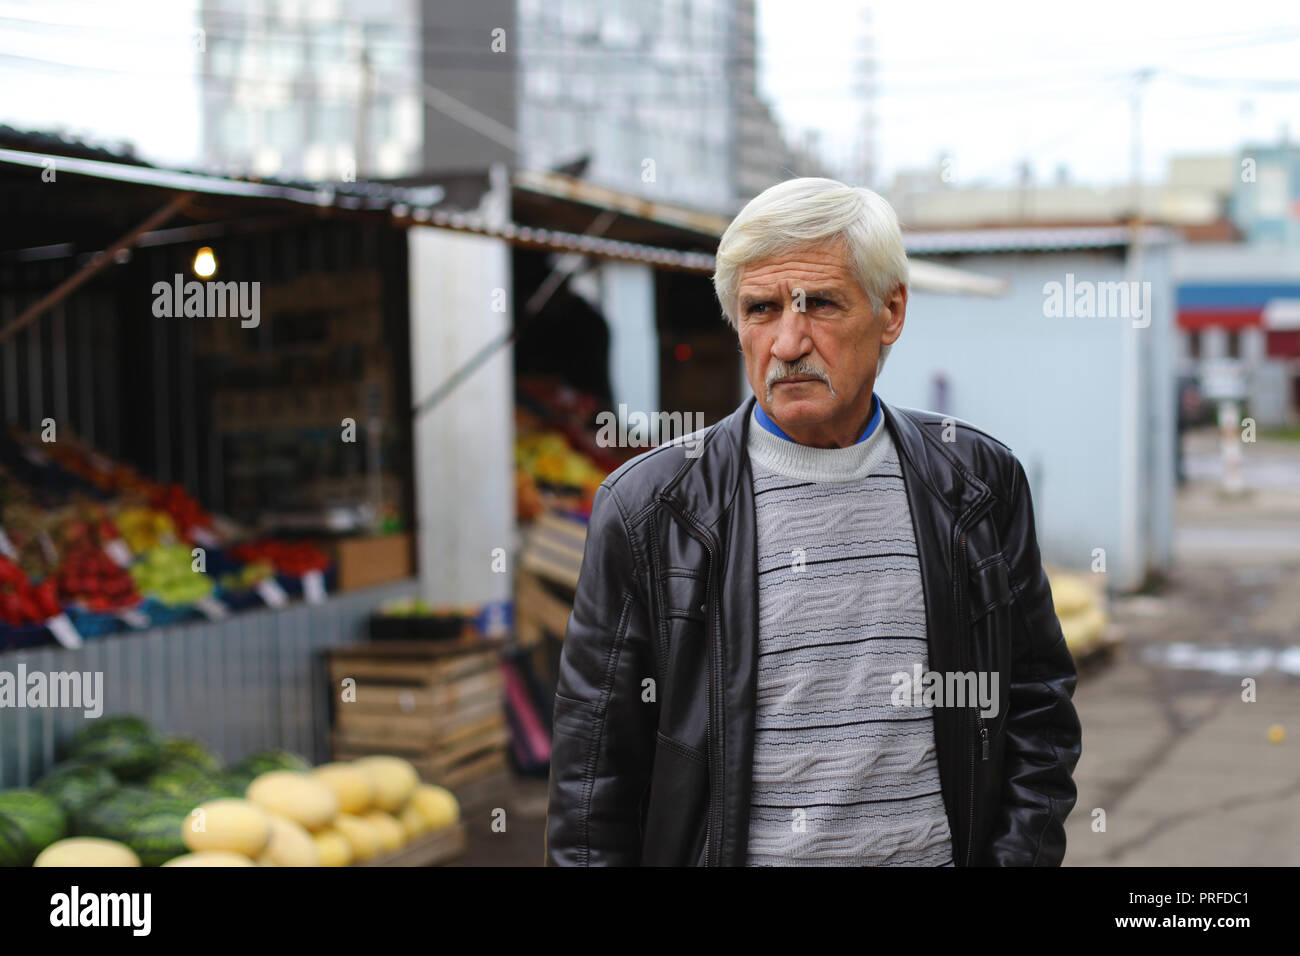 Portrait d'un homme de 60 ans. L'homme est dans la rue à l'épicerie Banque D'Images